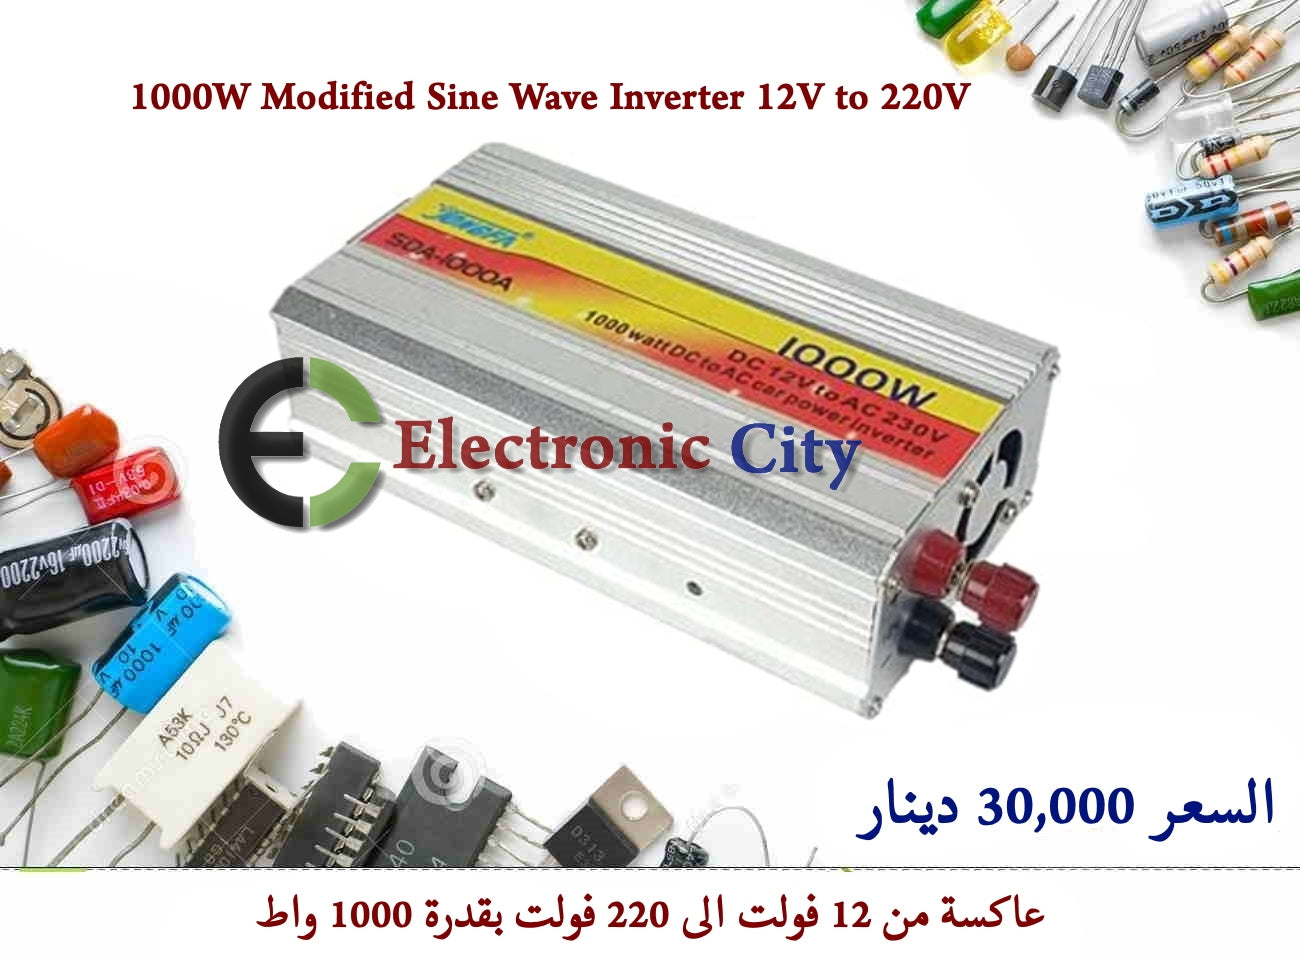 1000W Car Power Inverter, Modified Sine Wave, DC 12 Volt to 220 Volt AC